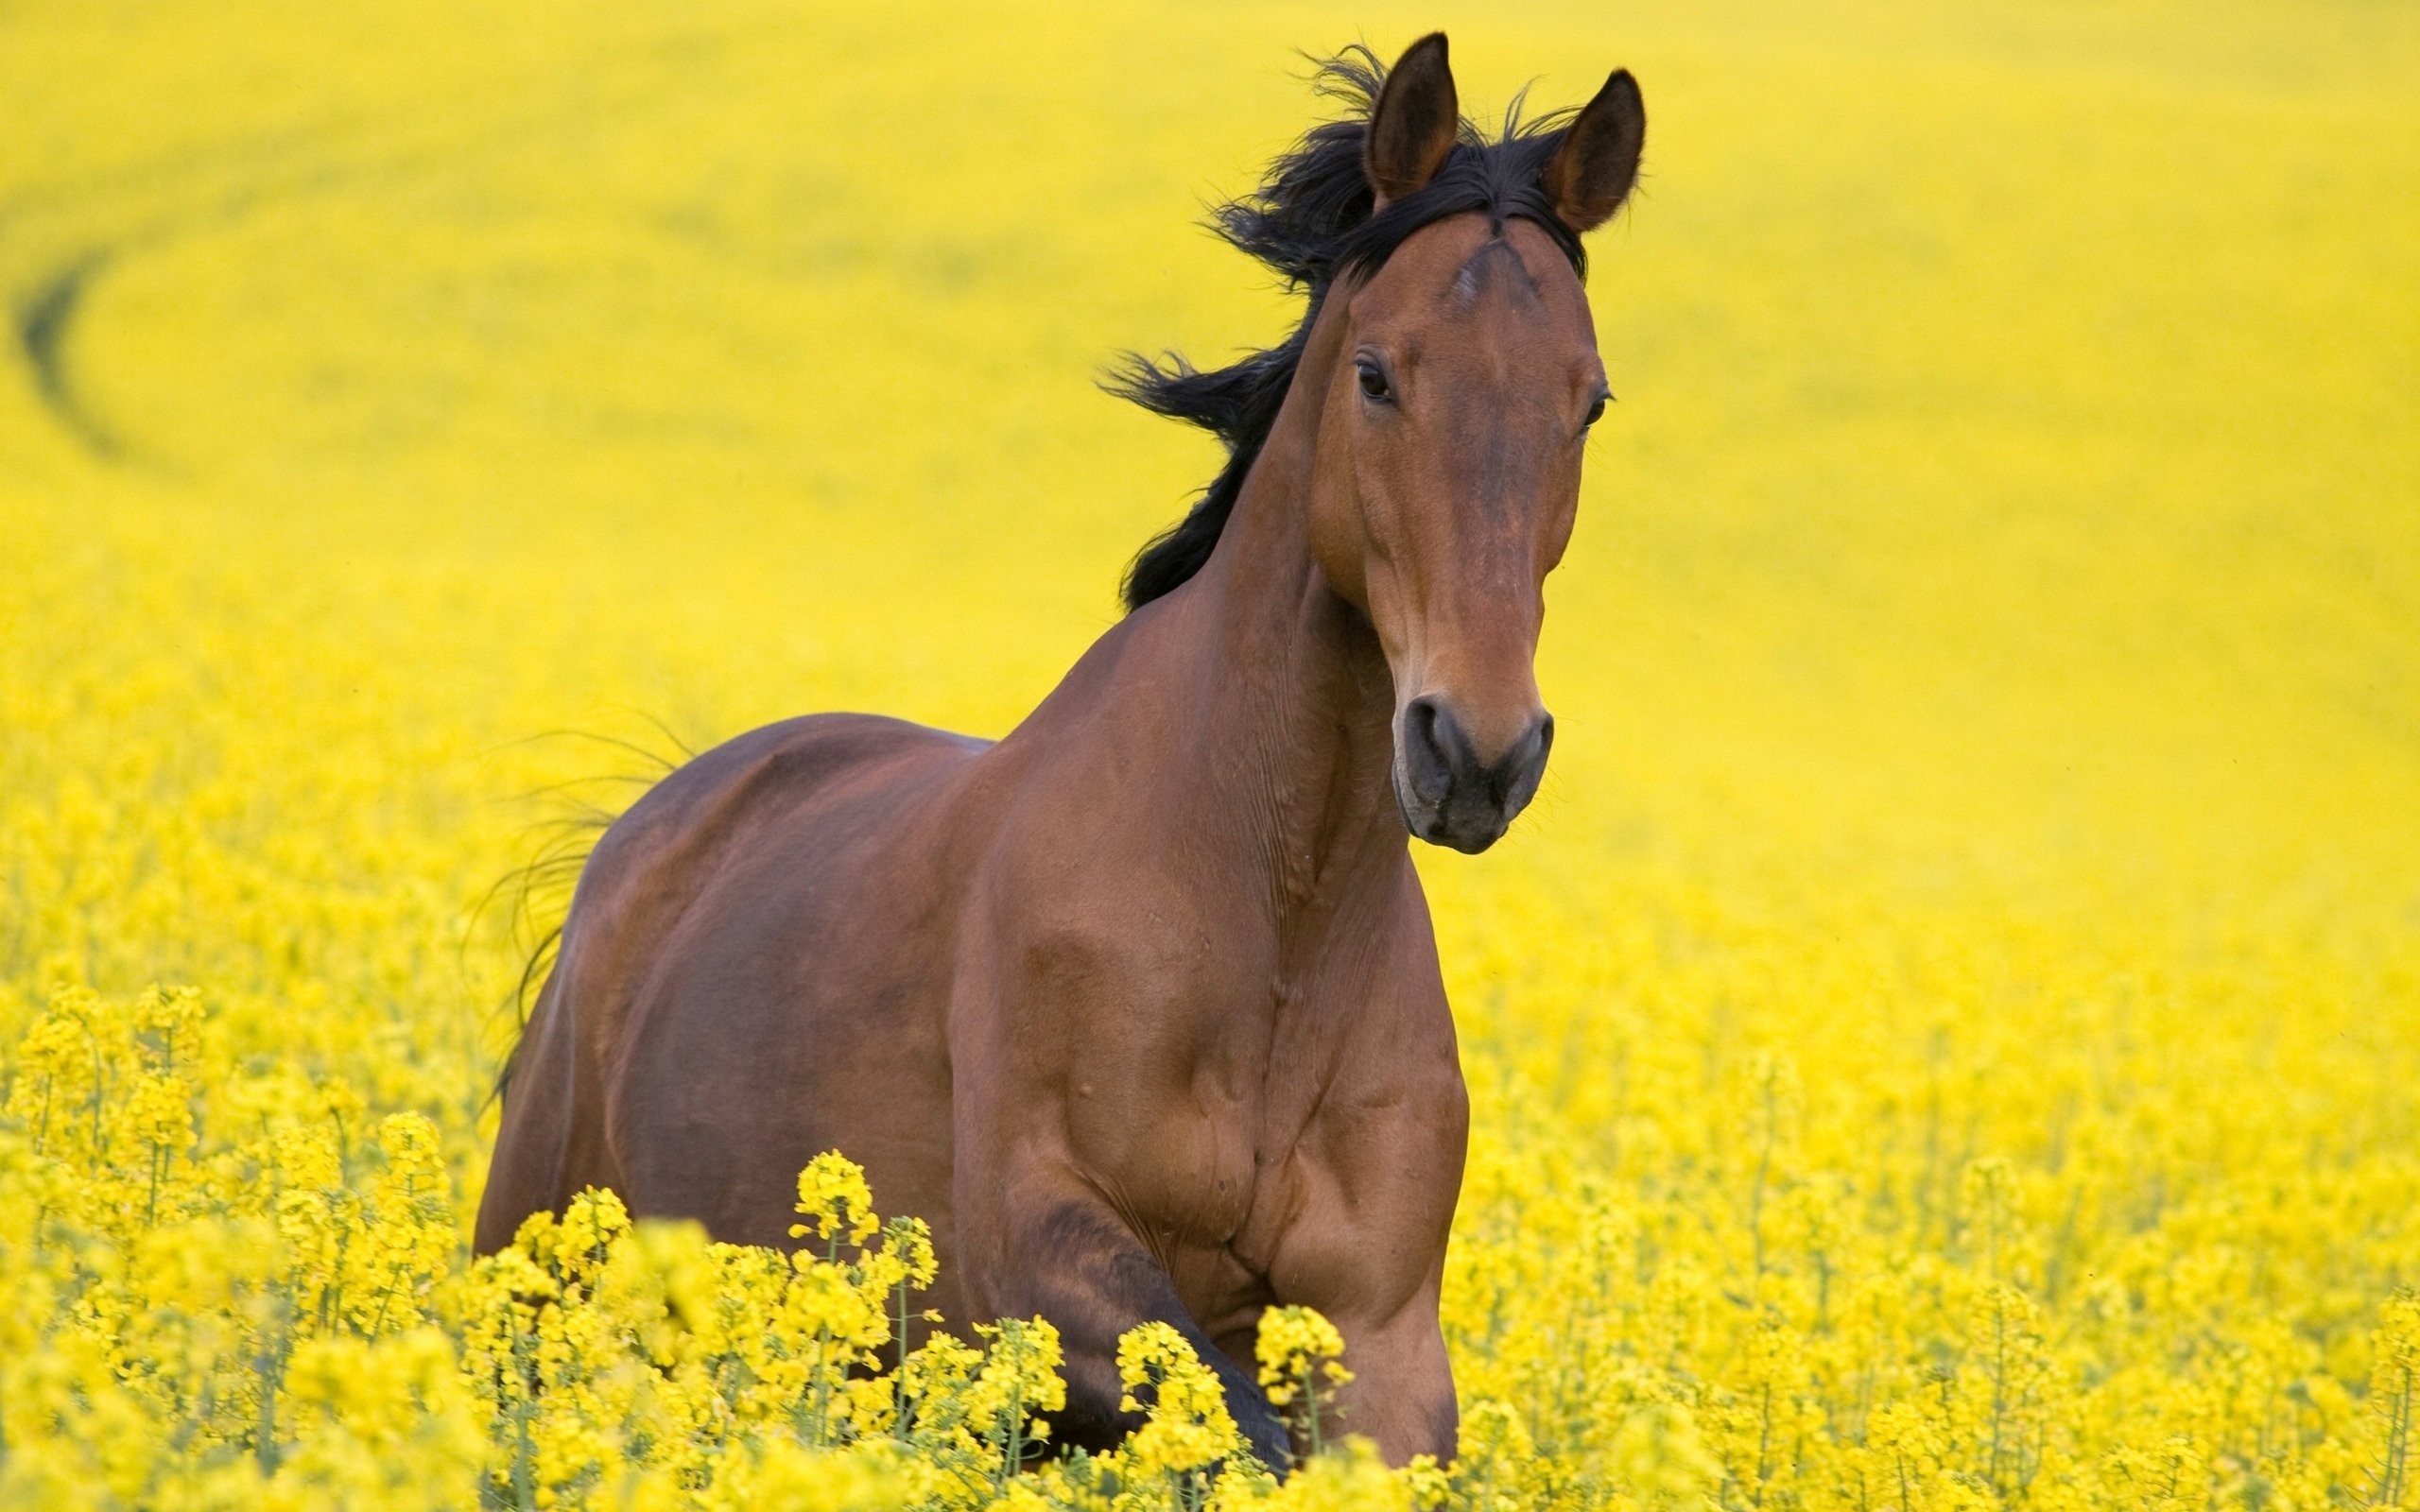 Hd, Desktop Wallpapers Full Hd, Horse, Field,horse, - Kazakh Horse , HD Wallpaper & Backgrounds